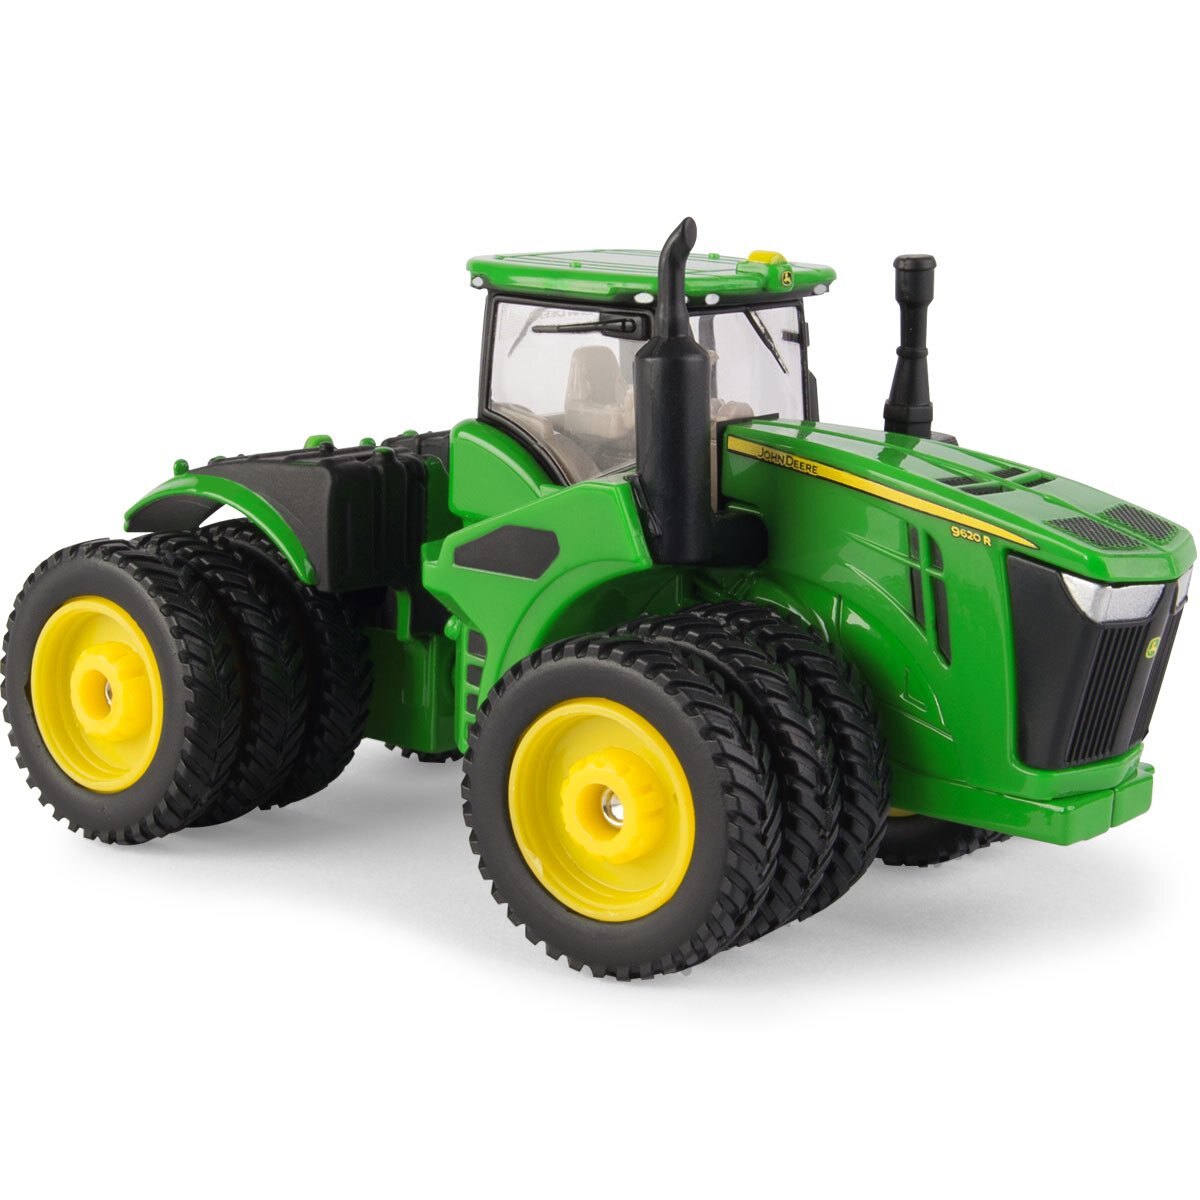 John Deere 1:64 9620R Tractor